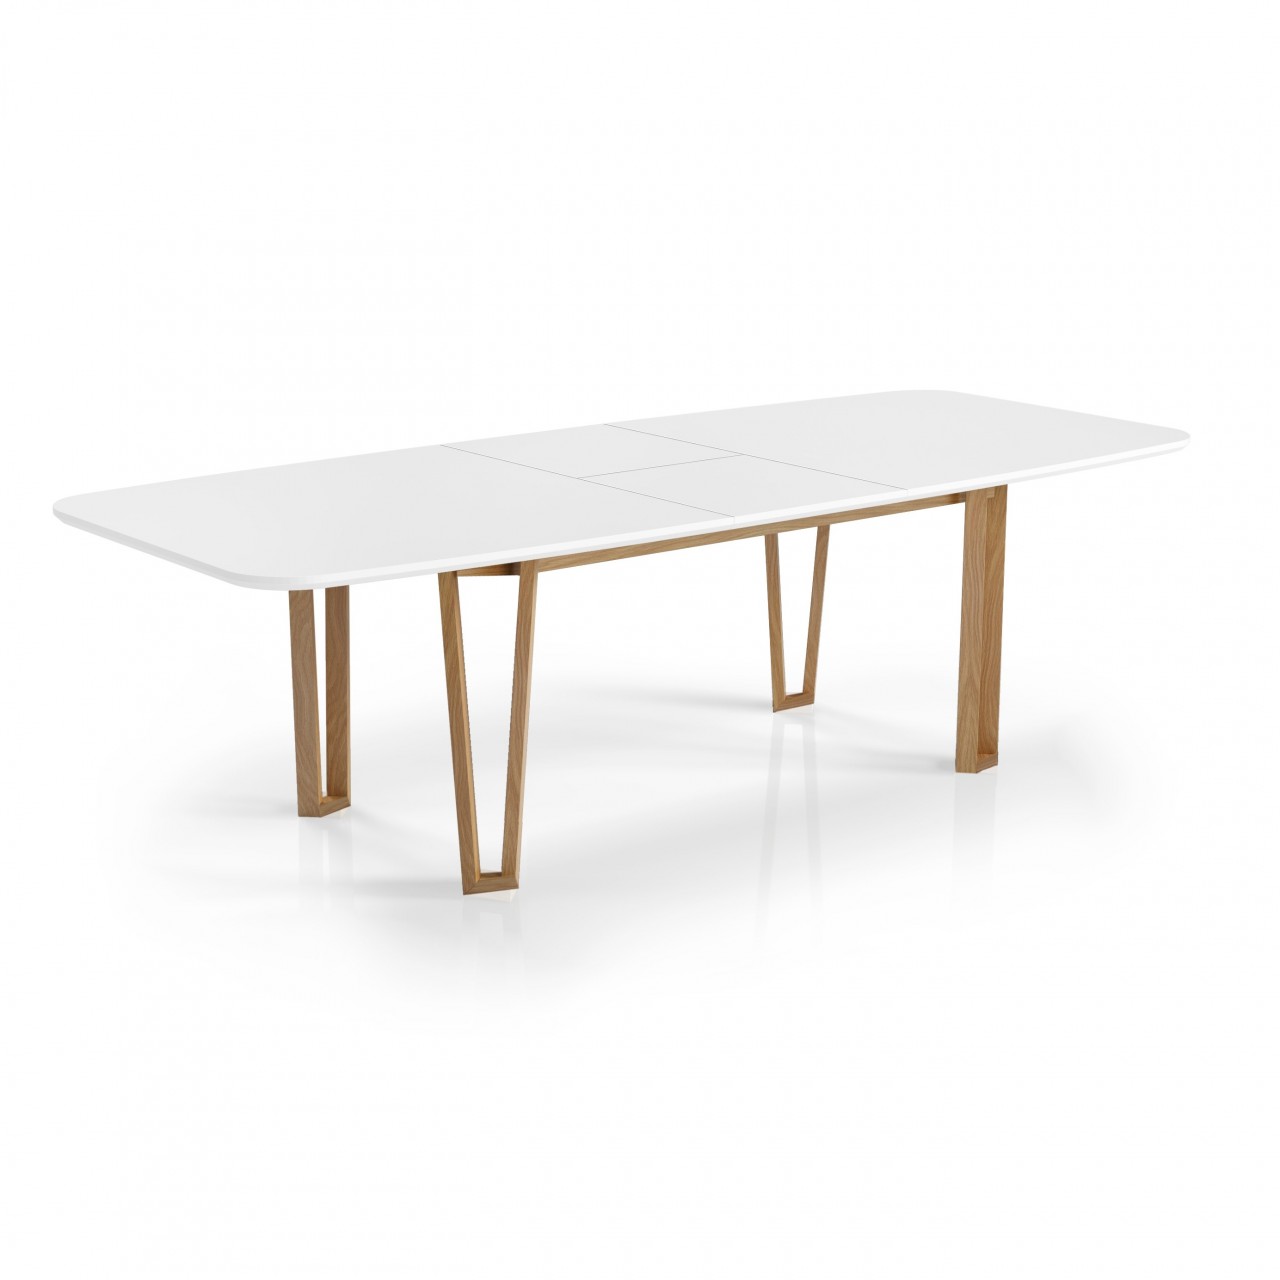 A mesa Luca New é a solução certa para espaços limitados. Suas linhas modernas e suave extensão permitem que ela se adapte às suas necessidades e crie um ambiente único.